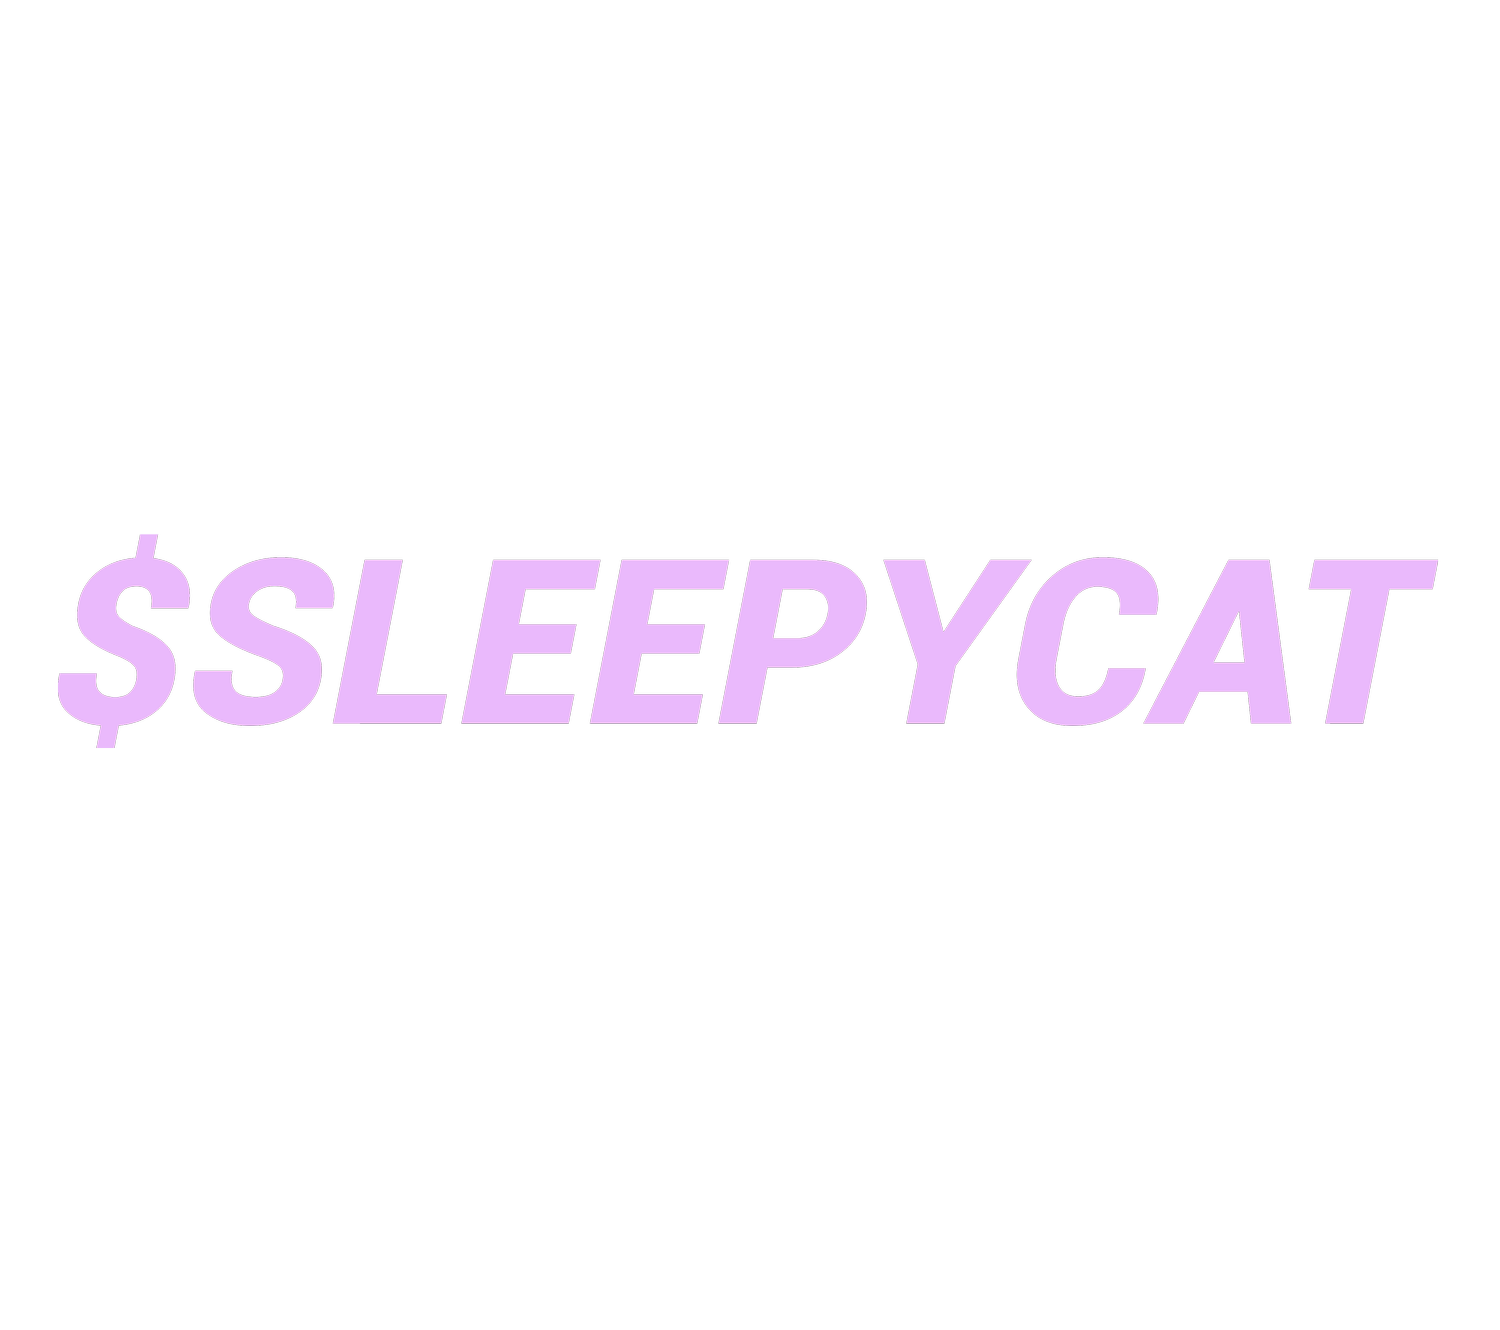 $SLEEPYCAT